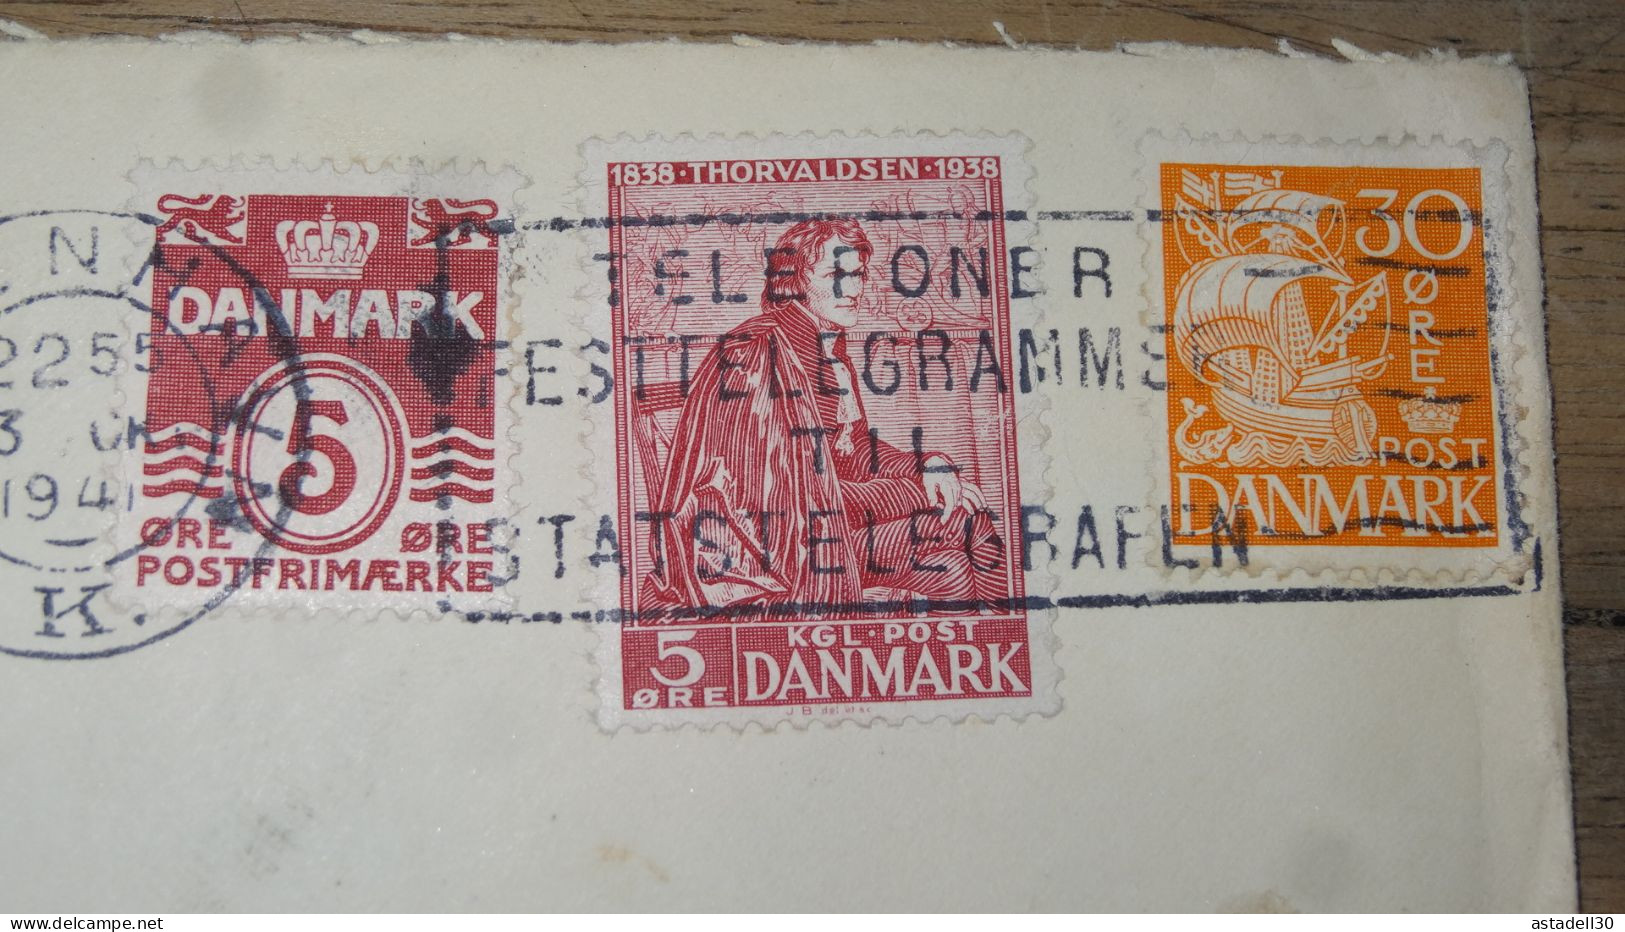 Enveloppe DANMARK, Censored, 1941  ............ Boite1 .............. 240424-248 - Covers & Documents